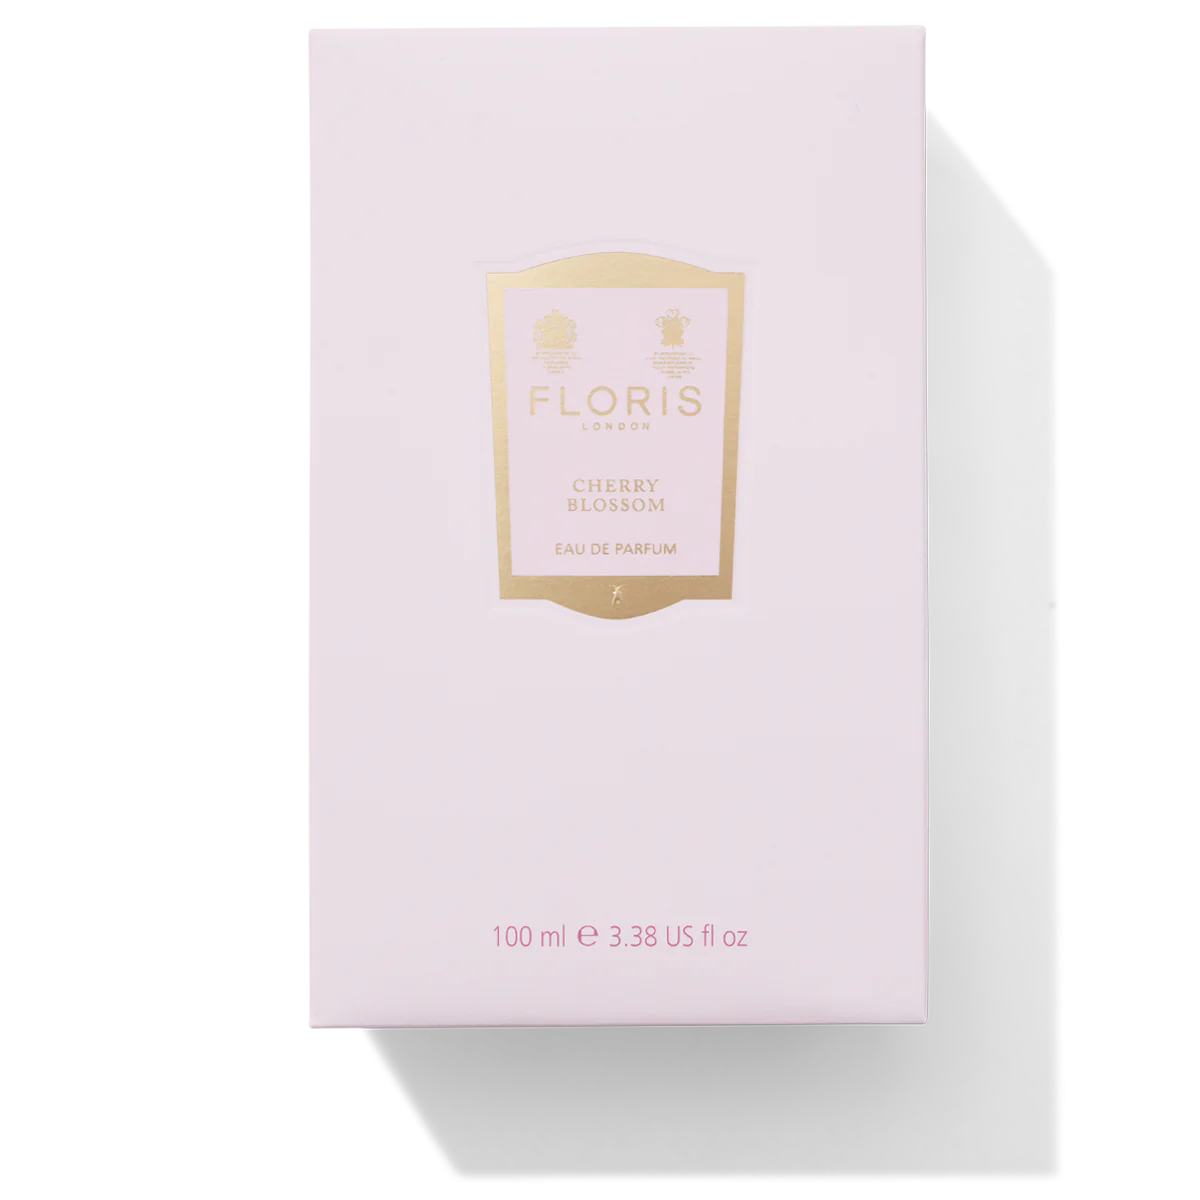 Floris London Cherry Blossom Eau de Parfum 100ml Box